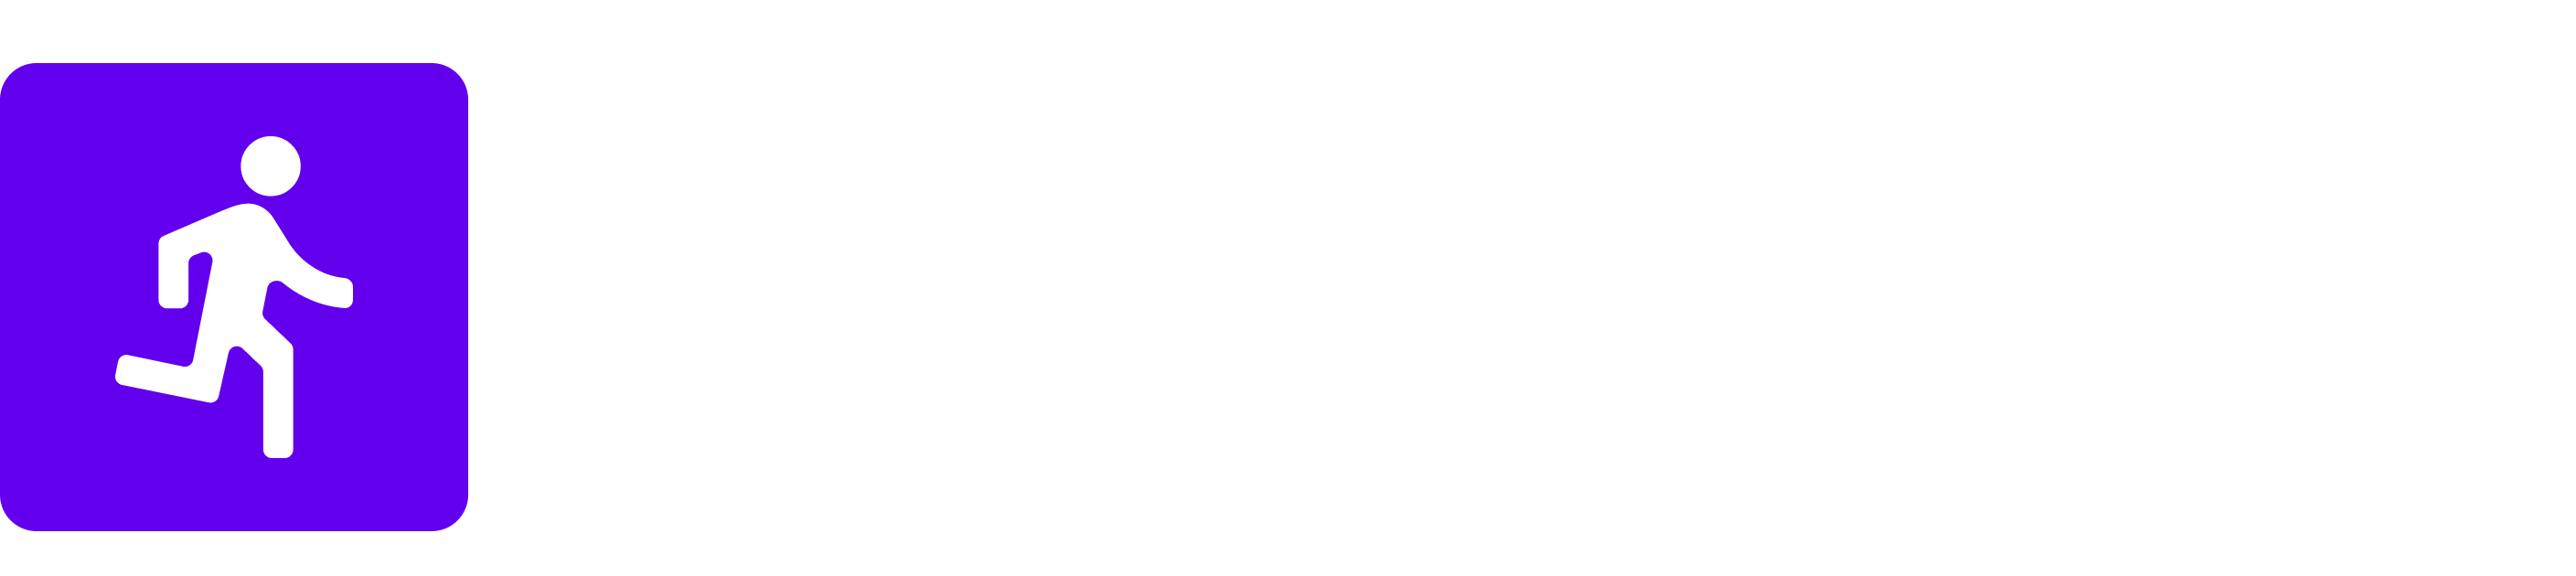 RUNkad logo